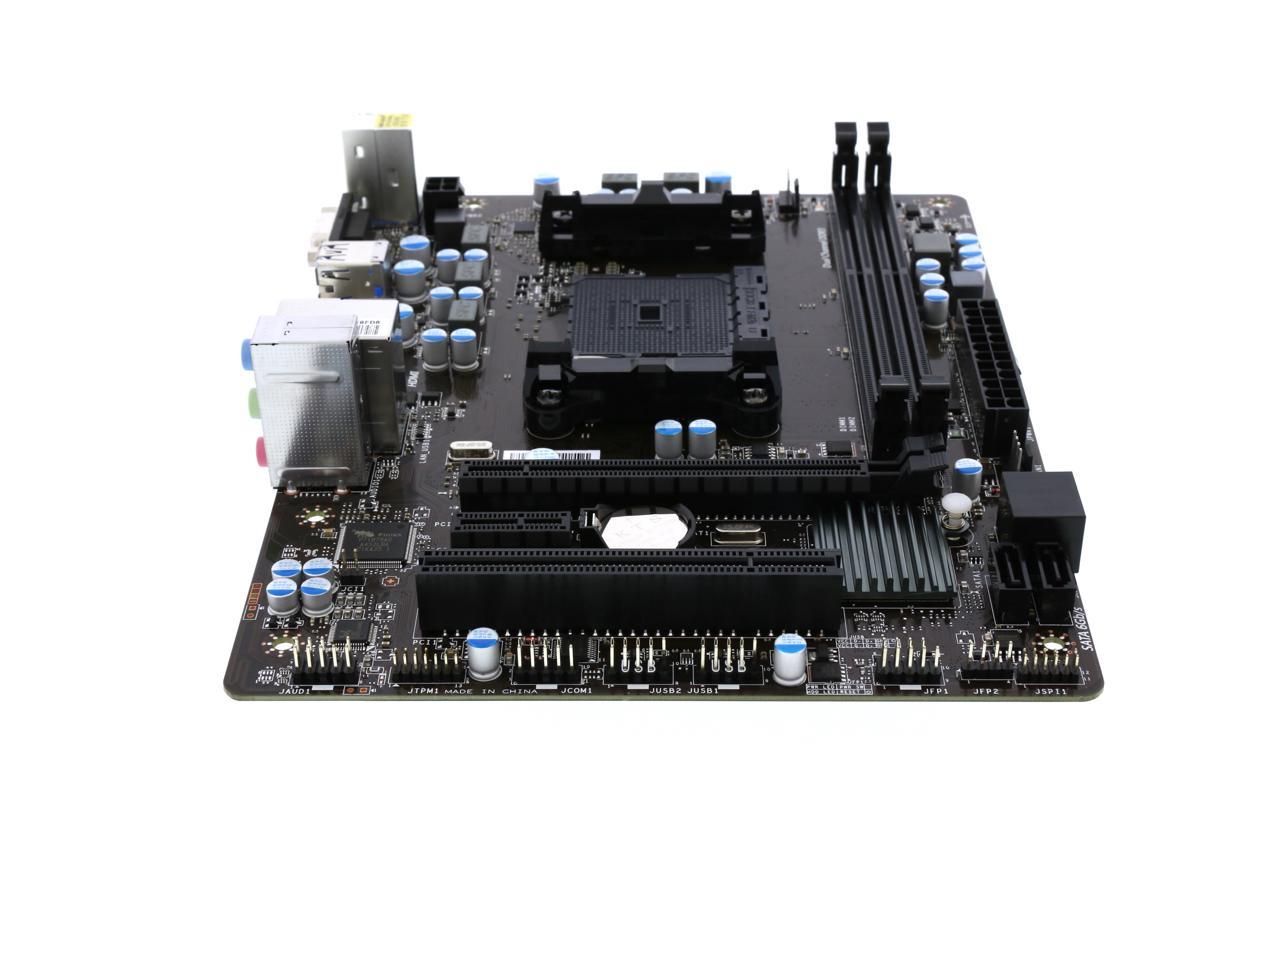 MSI A68HM-E33 V2 FM2+ Micro ATX AMD Motherboard - Newegg.com